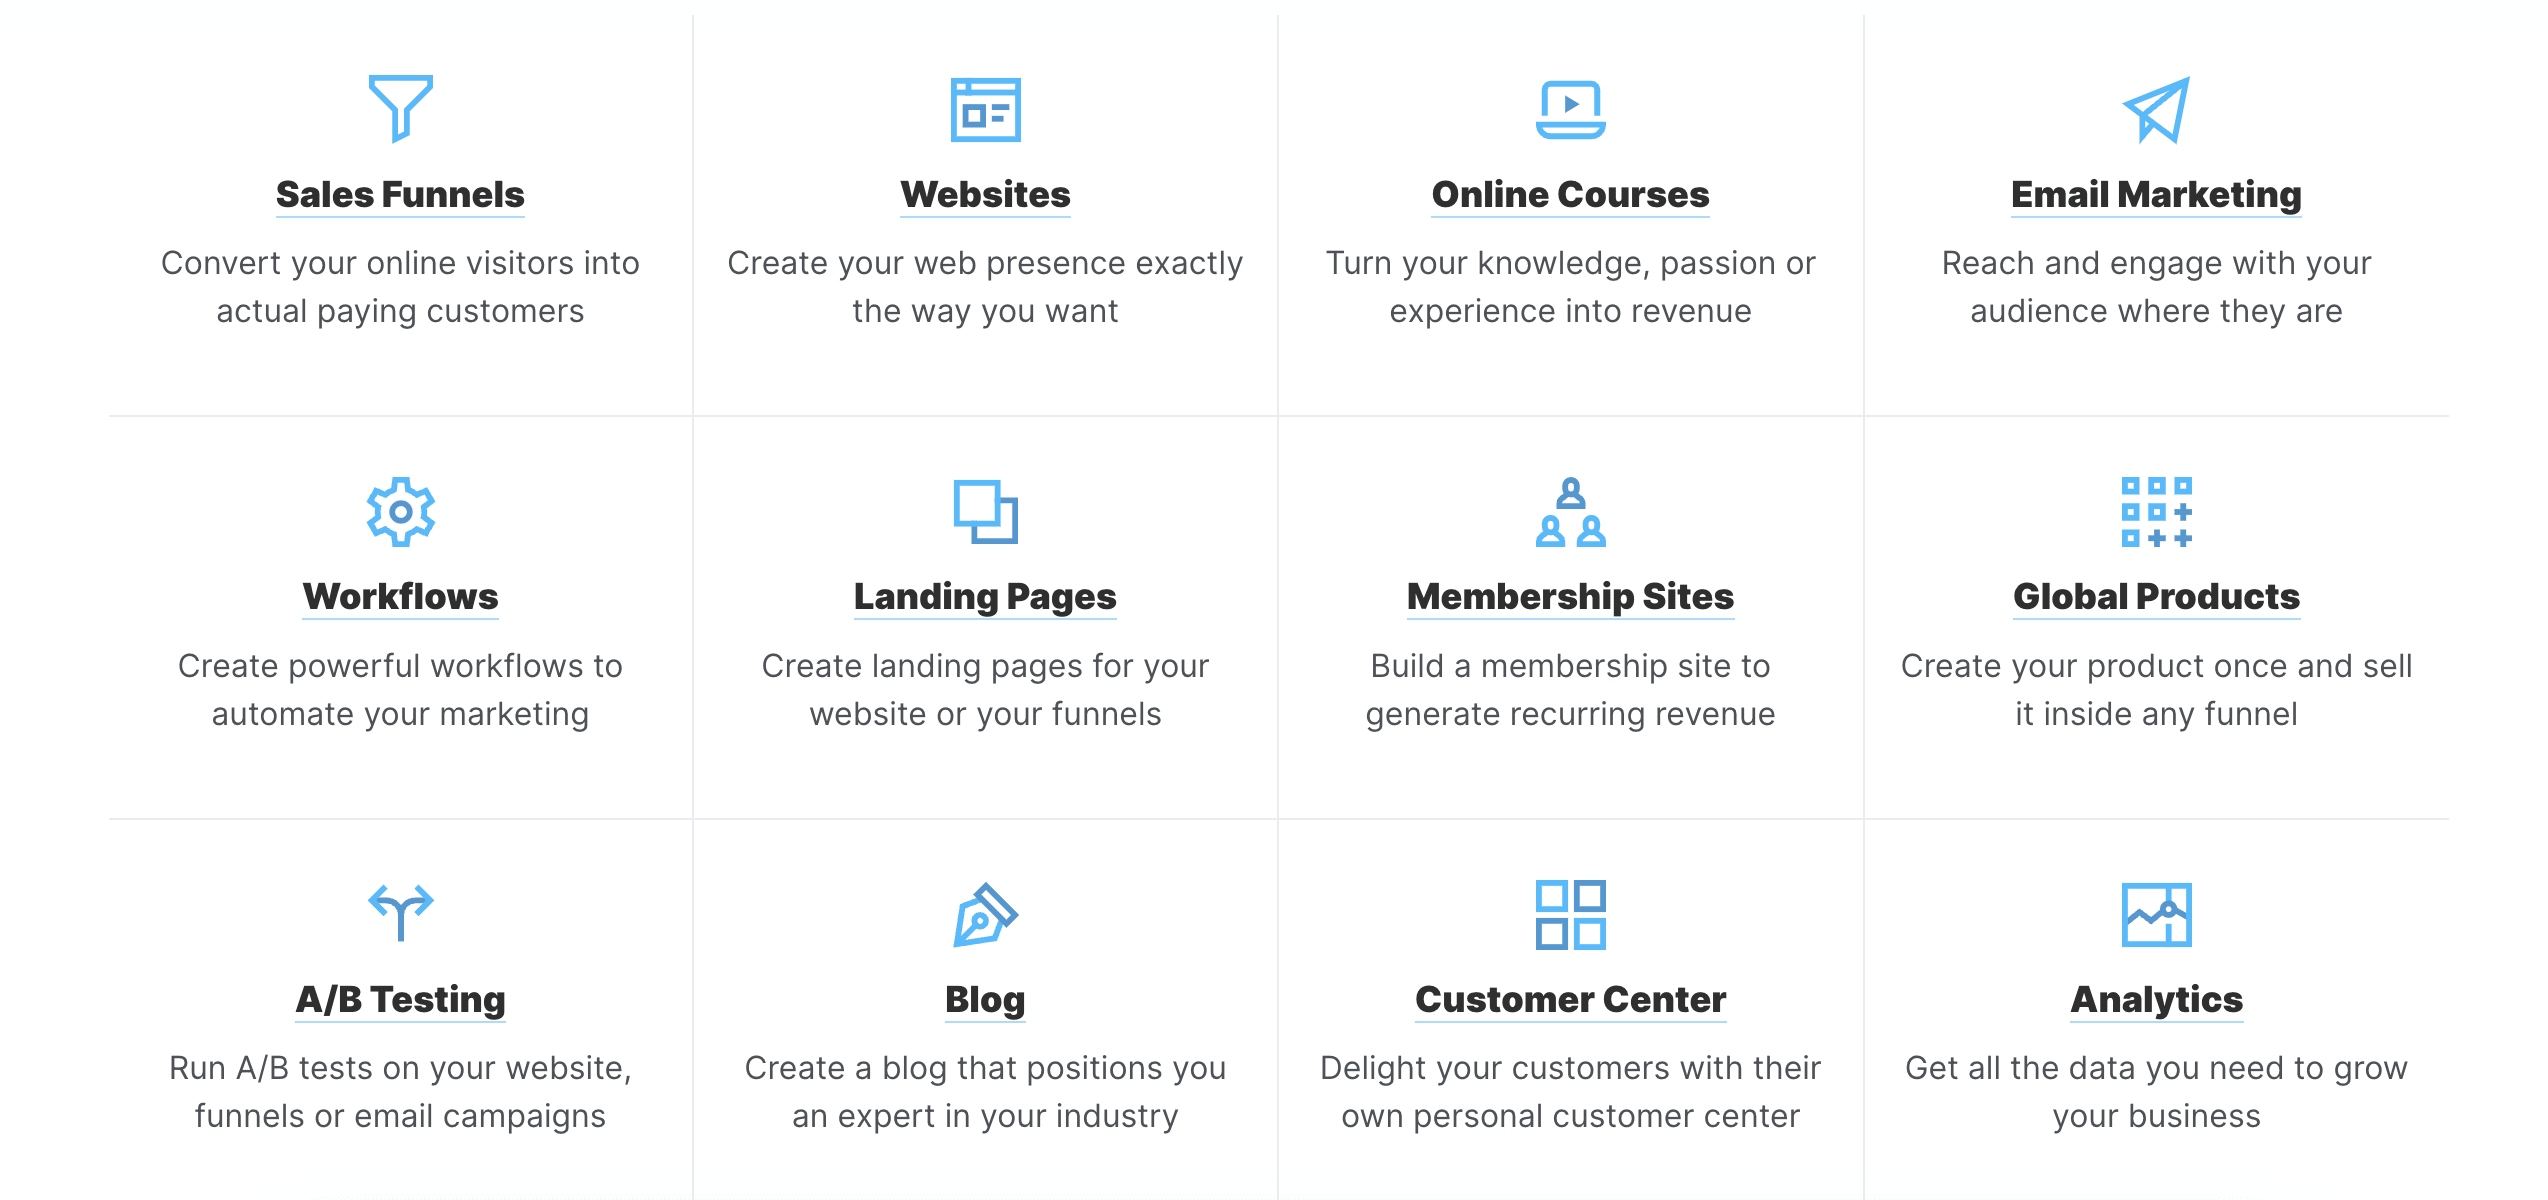 ClickFunnels Features